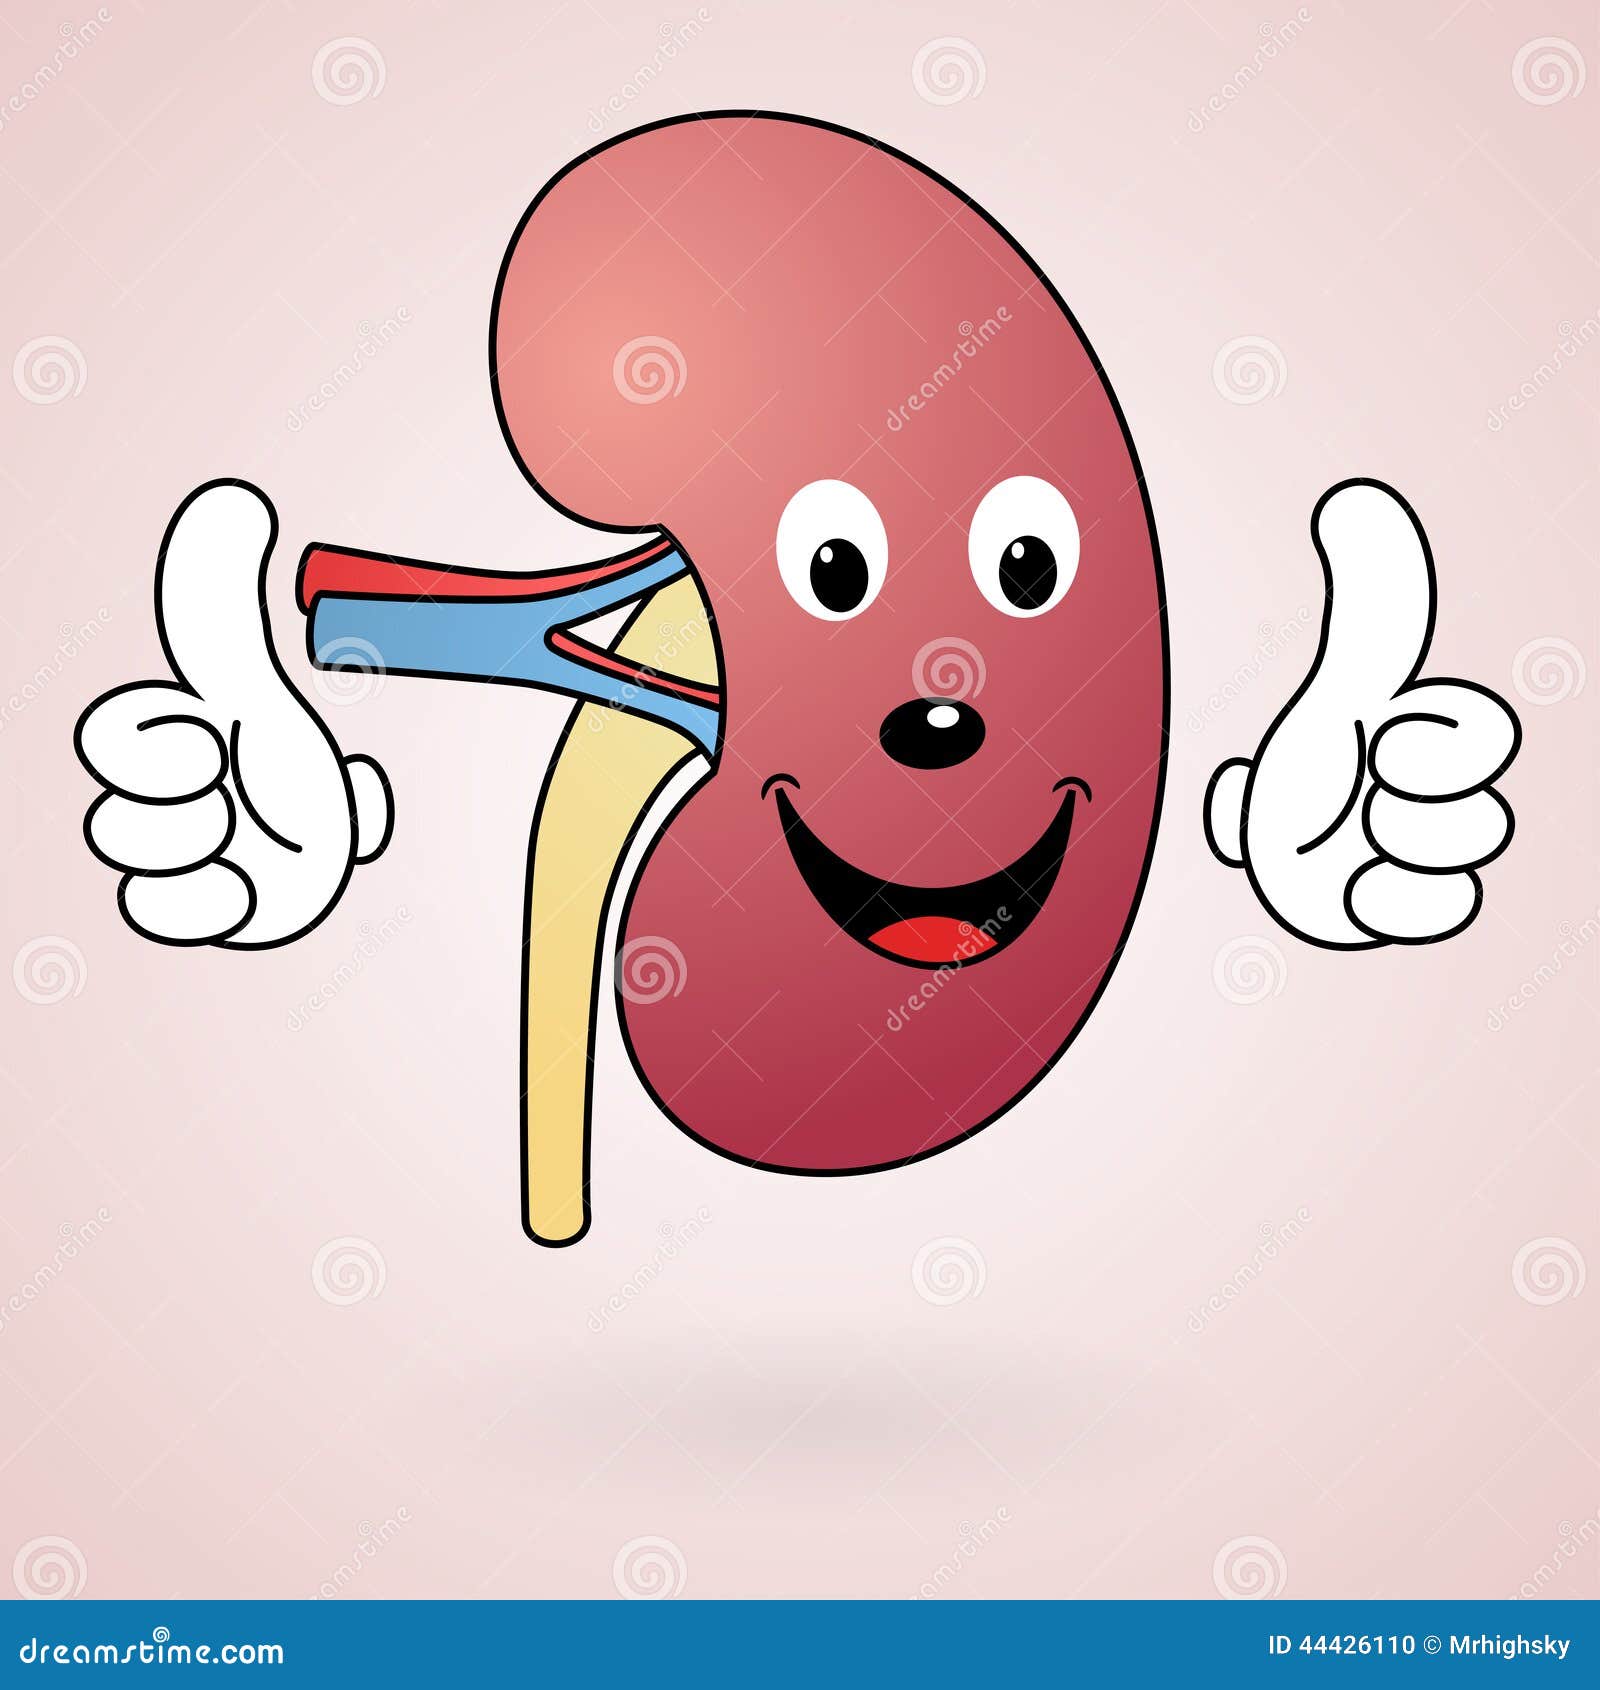 Healthy Cartoon Kidney Illustration 44426110 - Megapixl